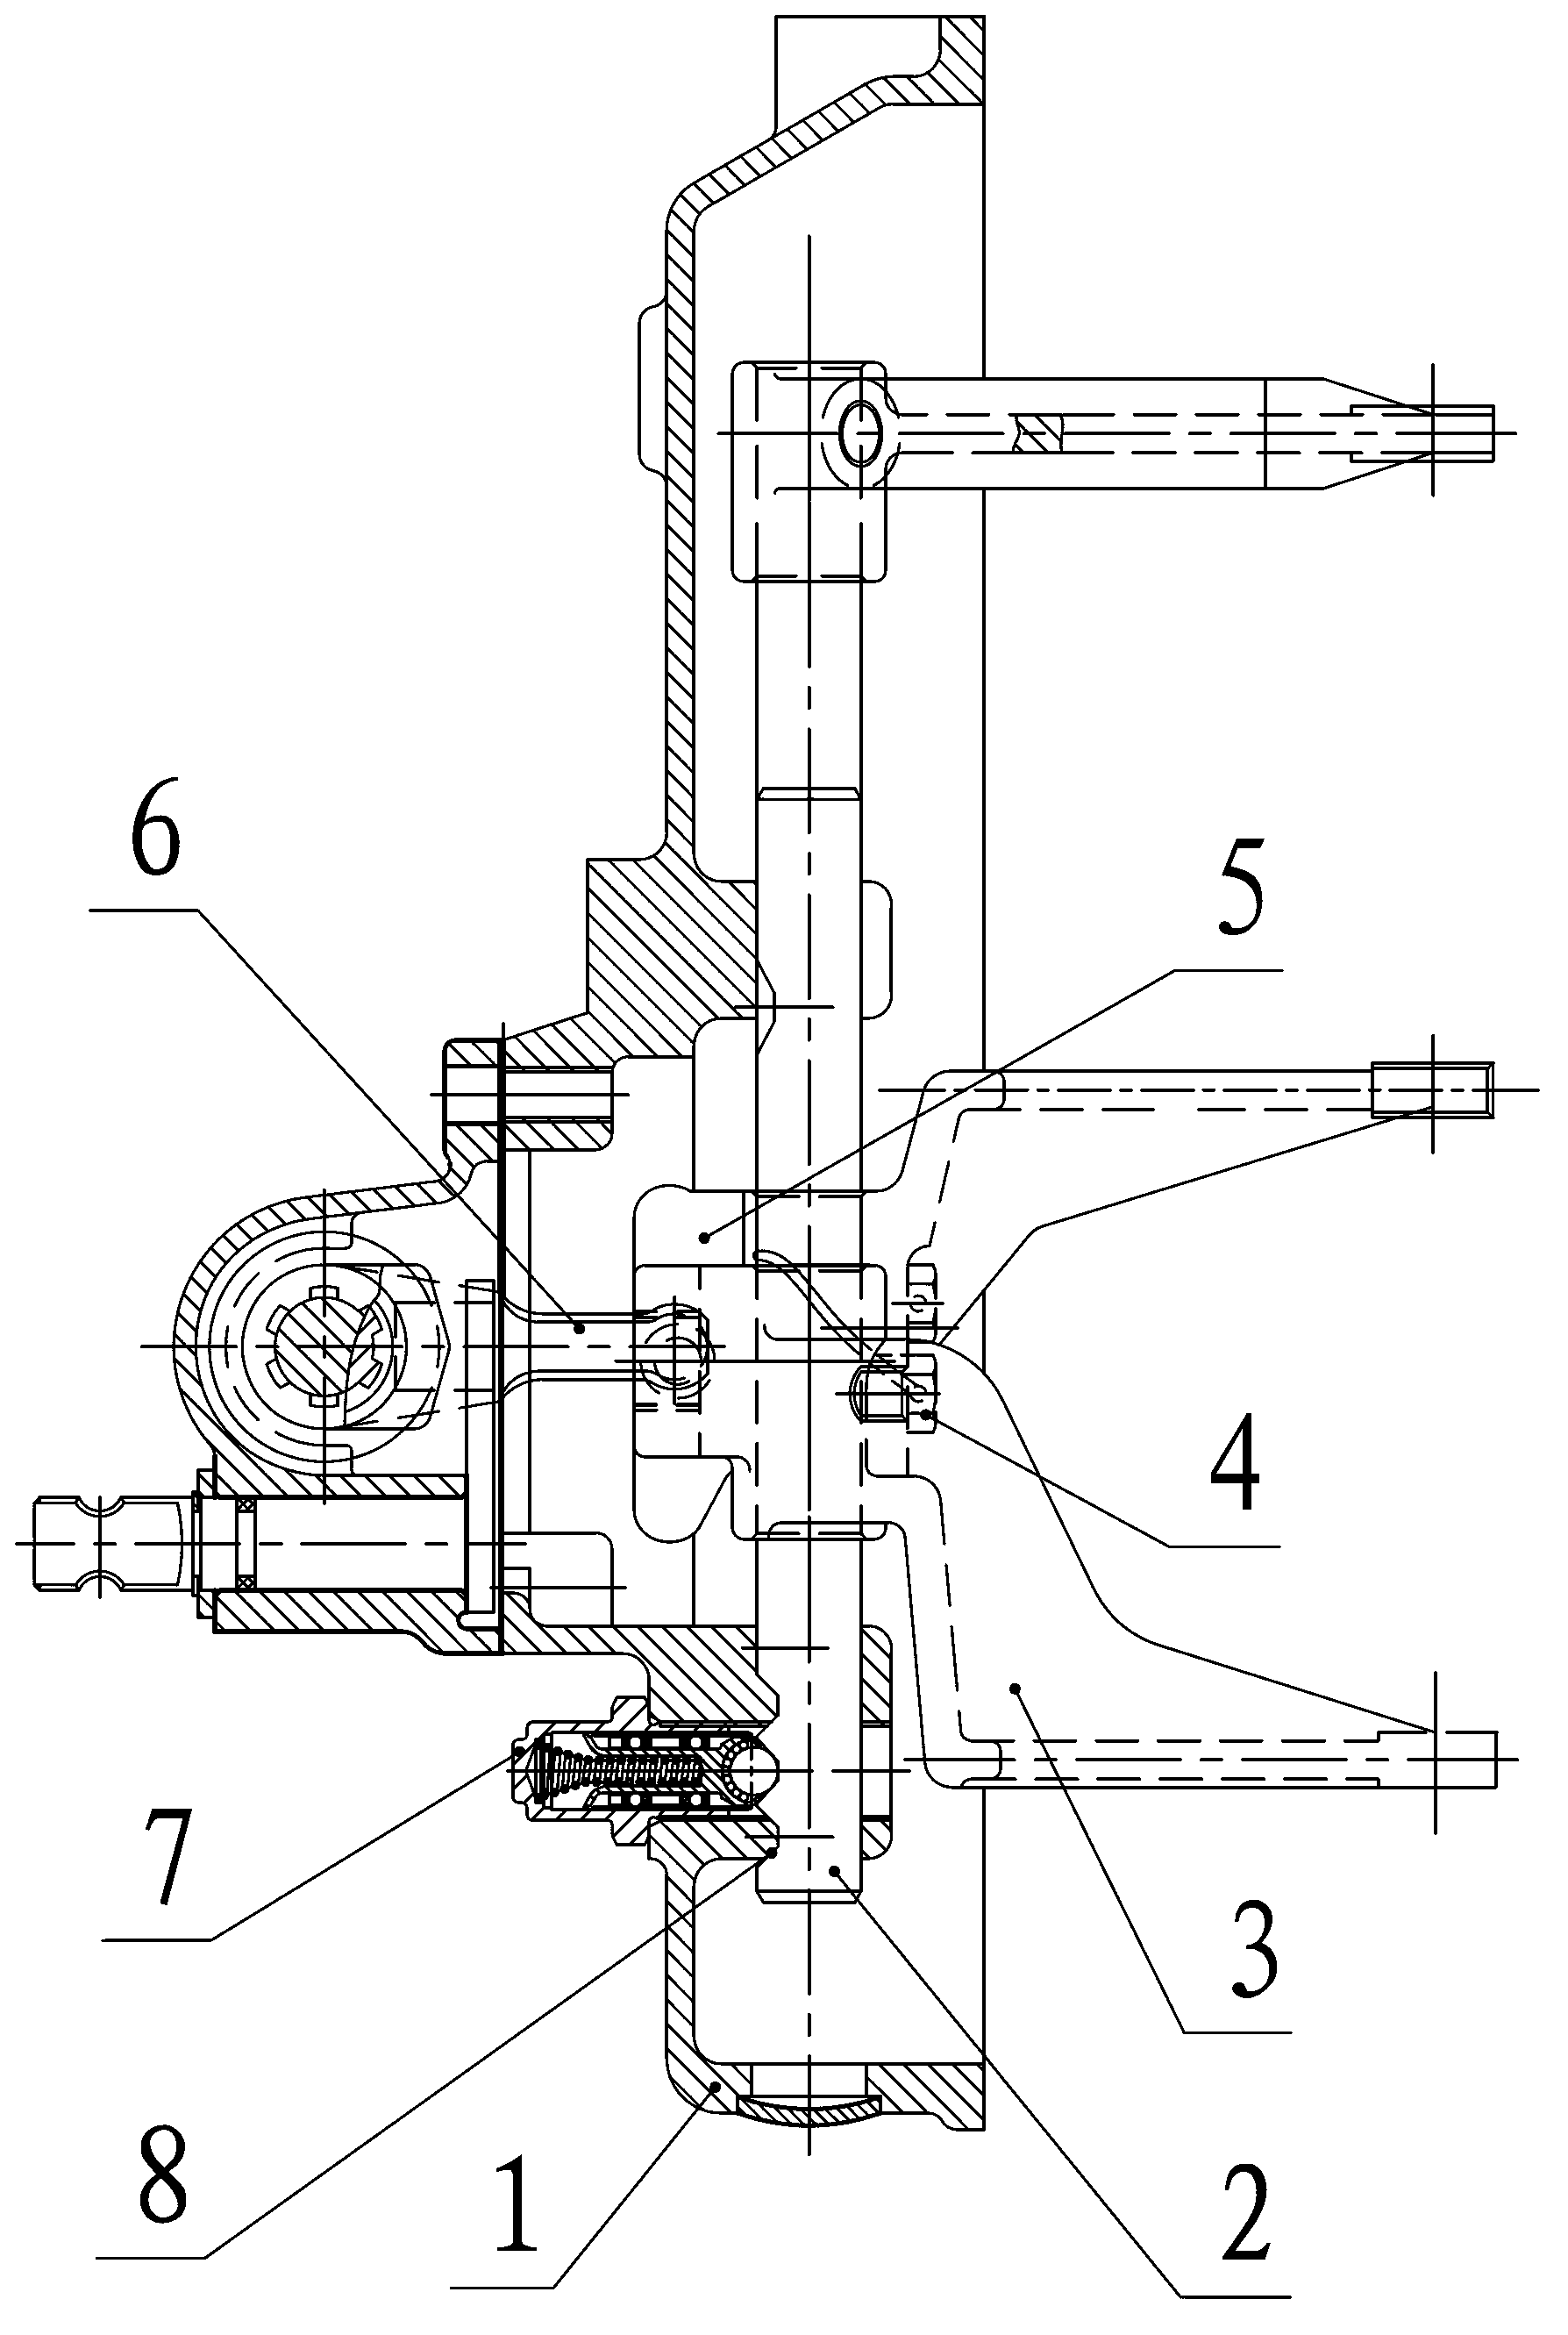 System for adjusting shifting force of manual transmission